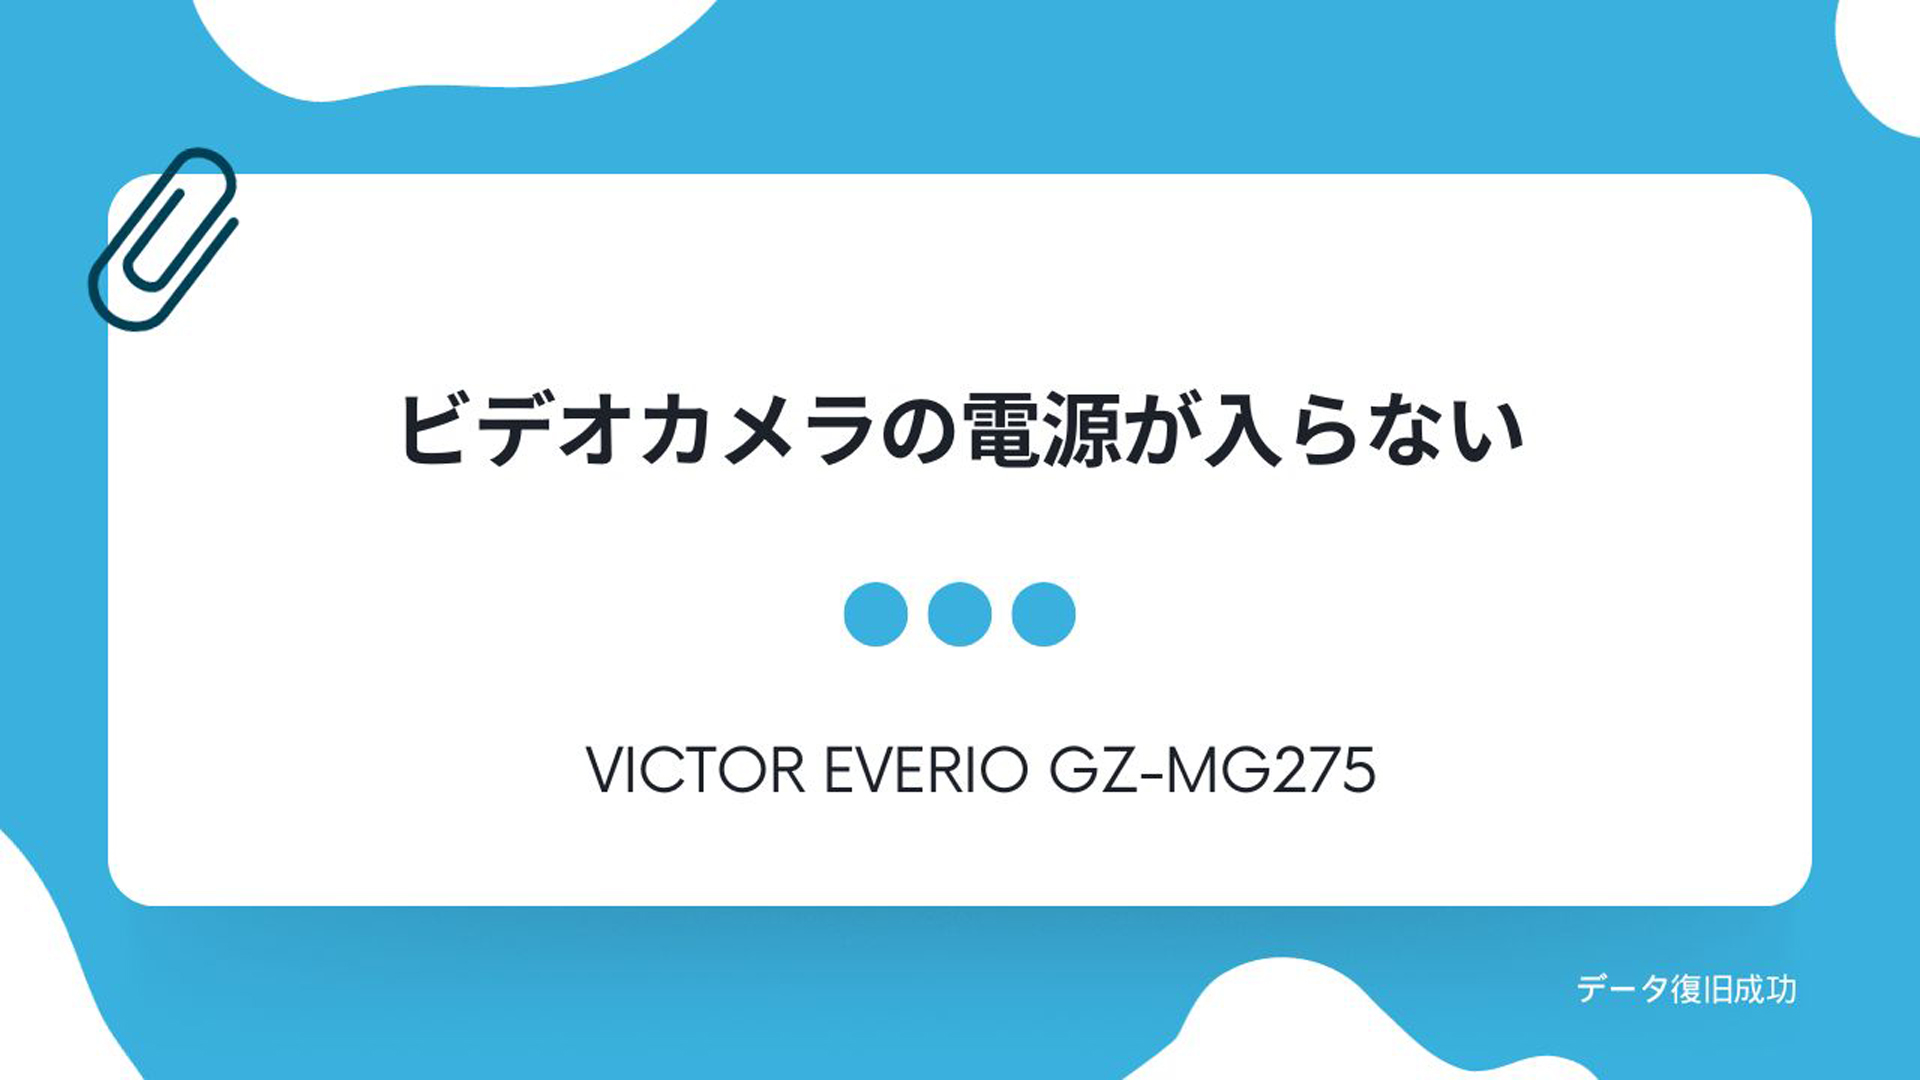 Victorビデオカメラ Everio GZ-MG275 電源が入らない